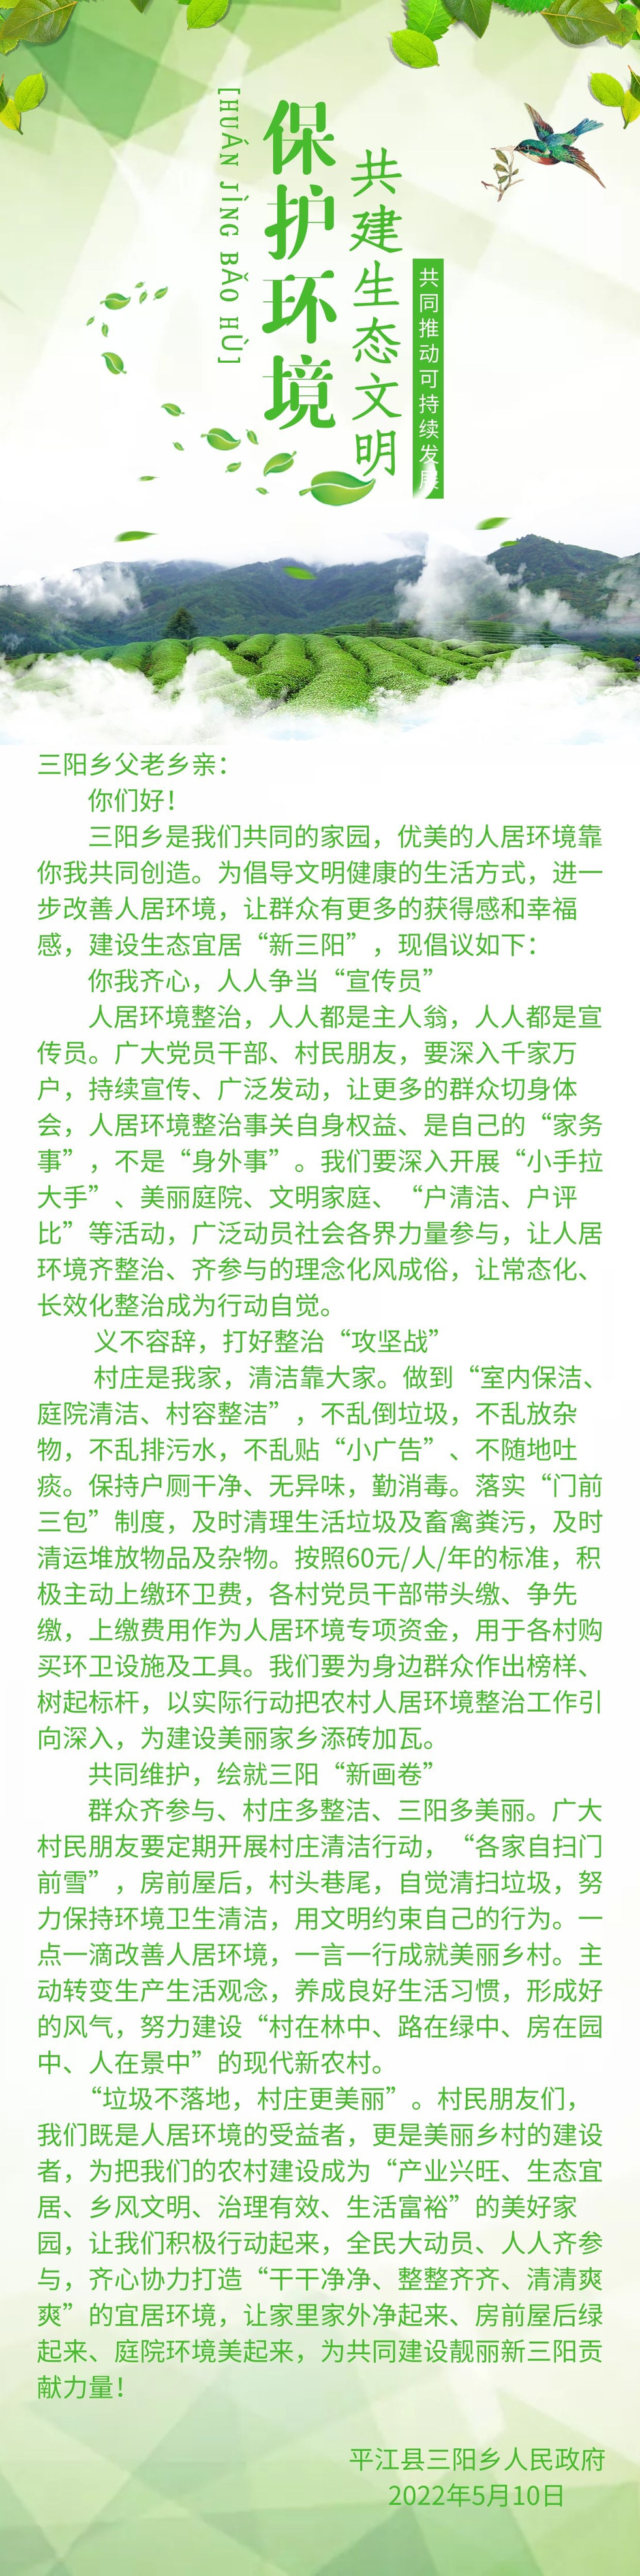 三阳乡村民朋友们：您有一份人居环境整治倡议书，请查收！